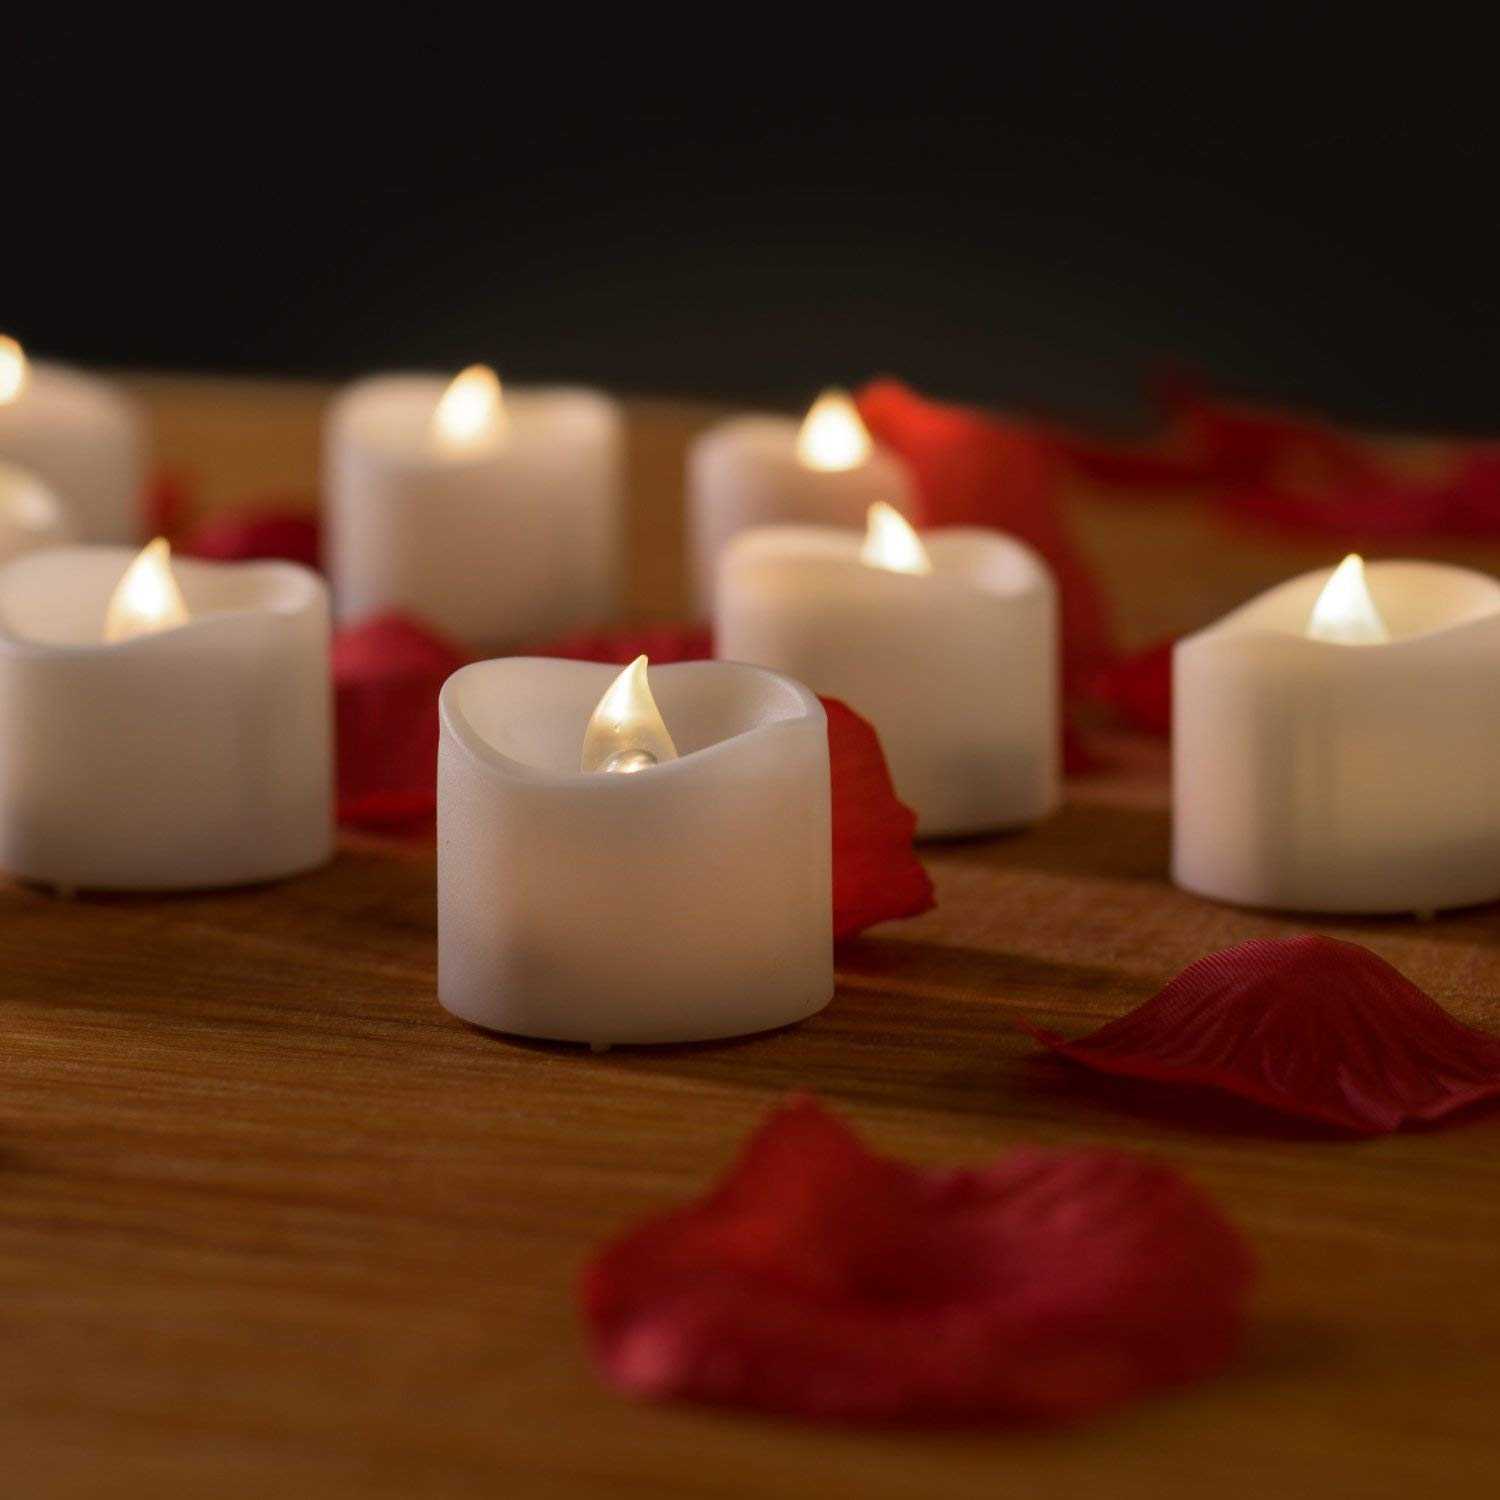 Изготовление свечей в домашних условиях как бизнес – как организовать, что для этого требуется и на сколько выгодно